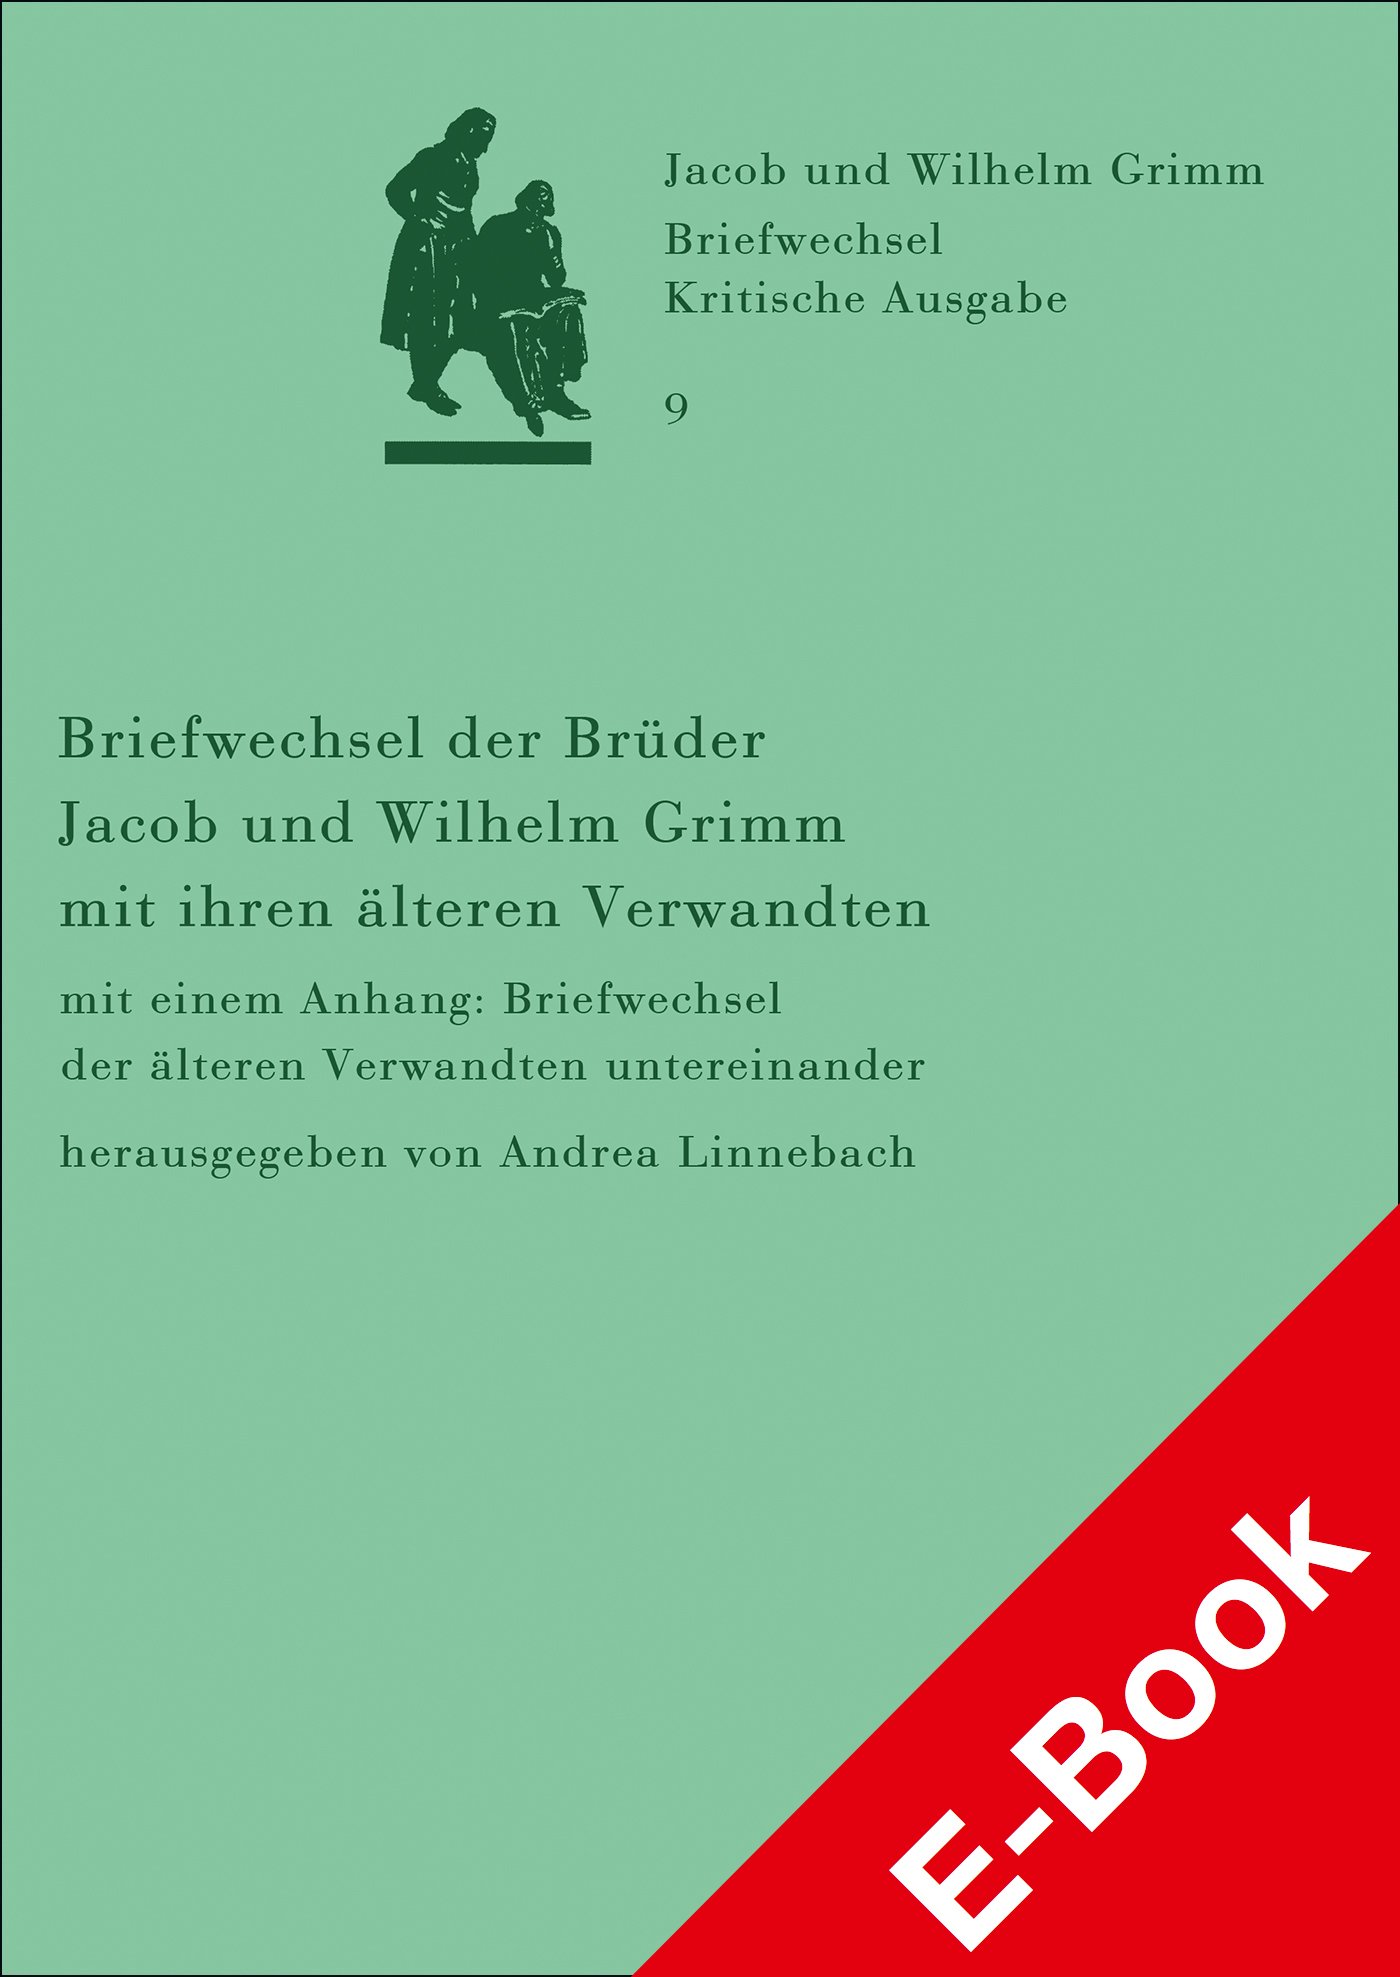 Briefwechsel der Brüder Jacob und Wilhelm Grimm mit ihren älteren Verwandten